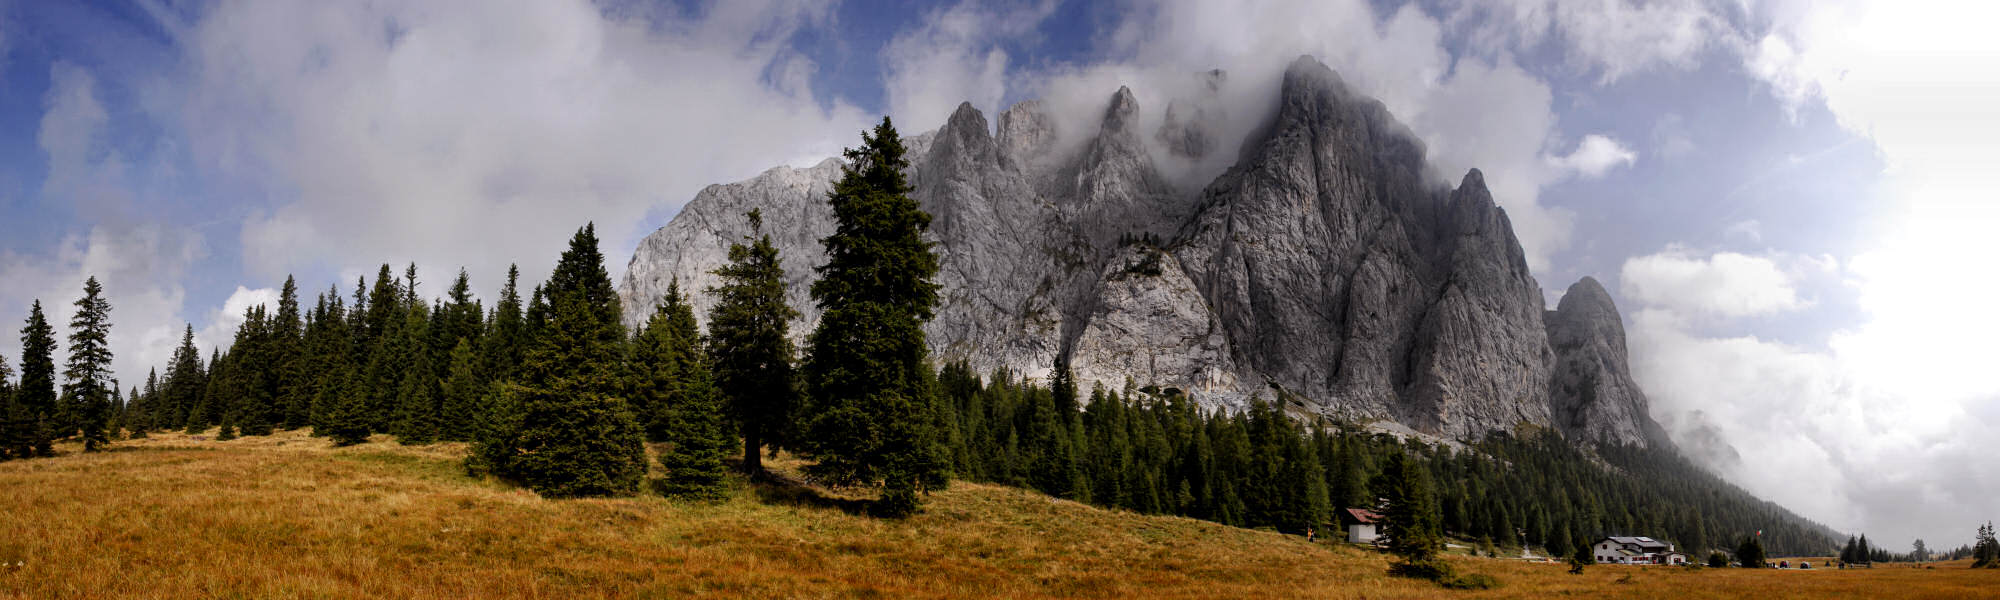 Dolomiti, Sappada Plodn - Sorgenti del Piave e monte Peralba